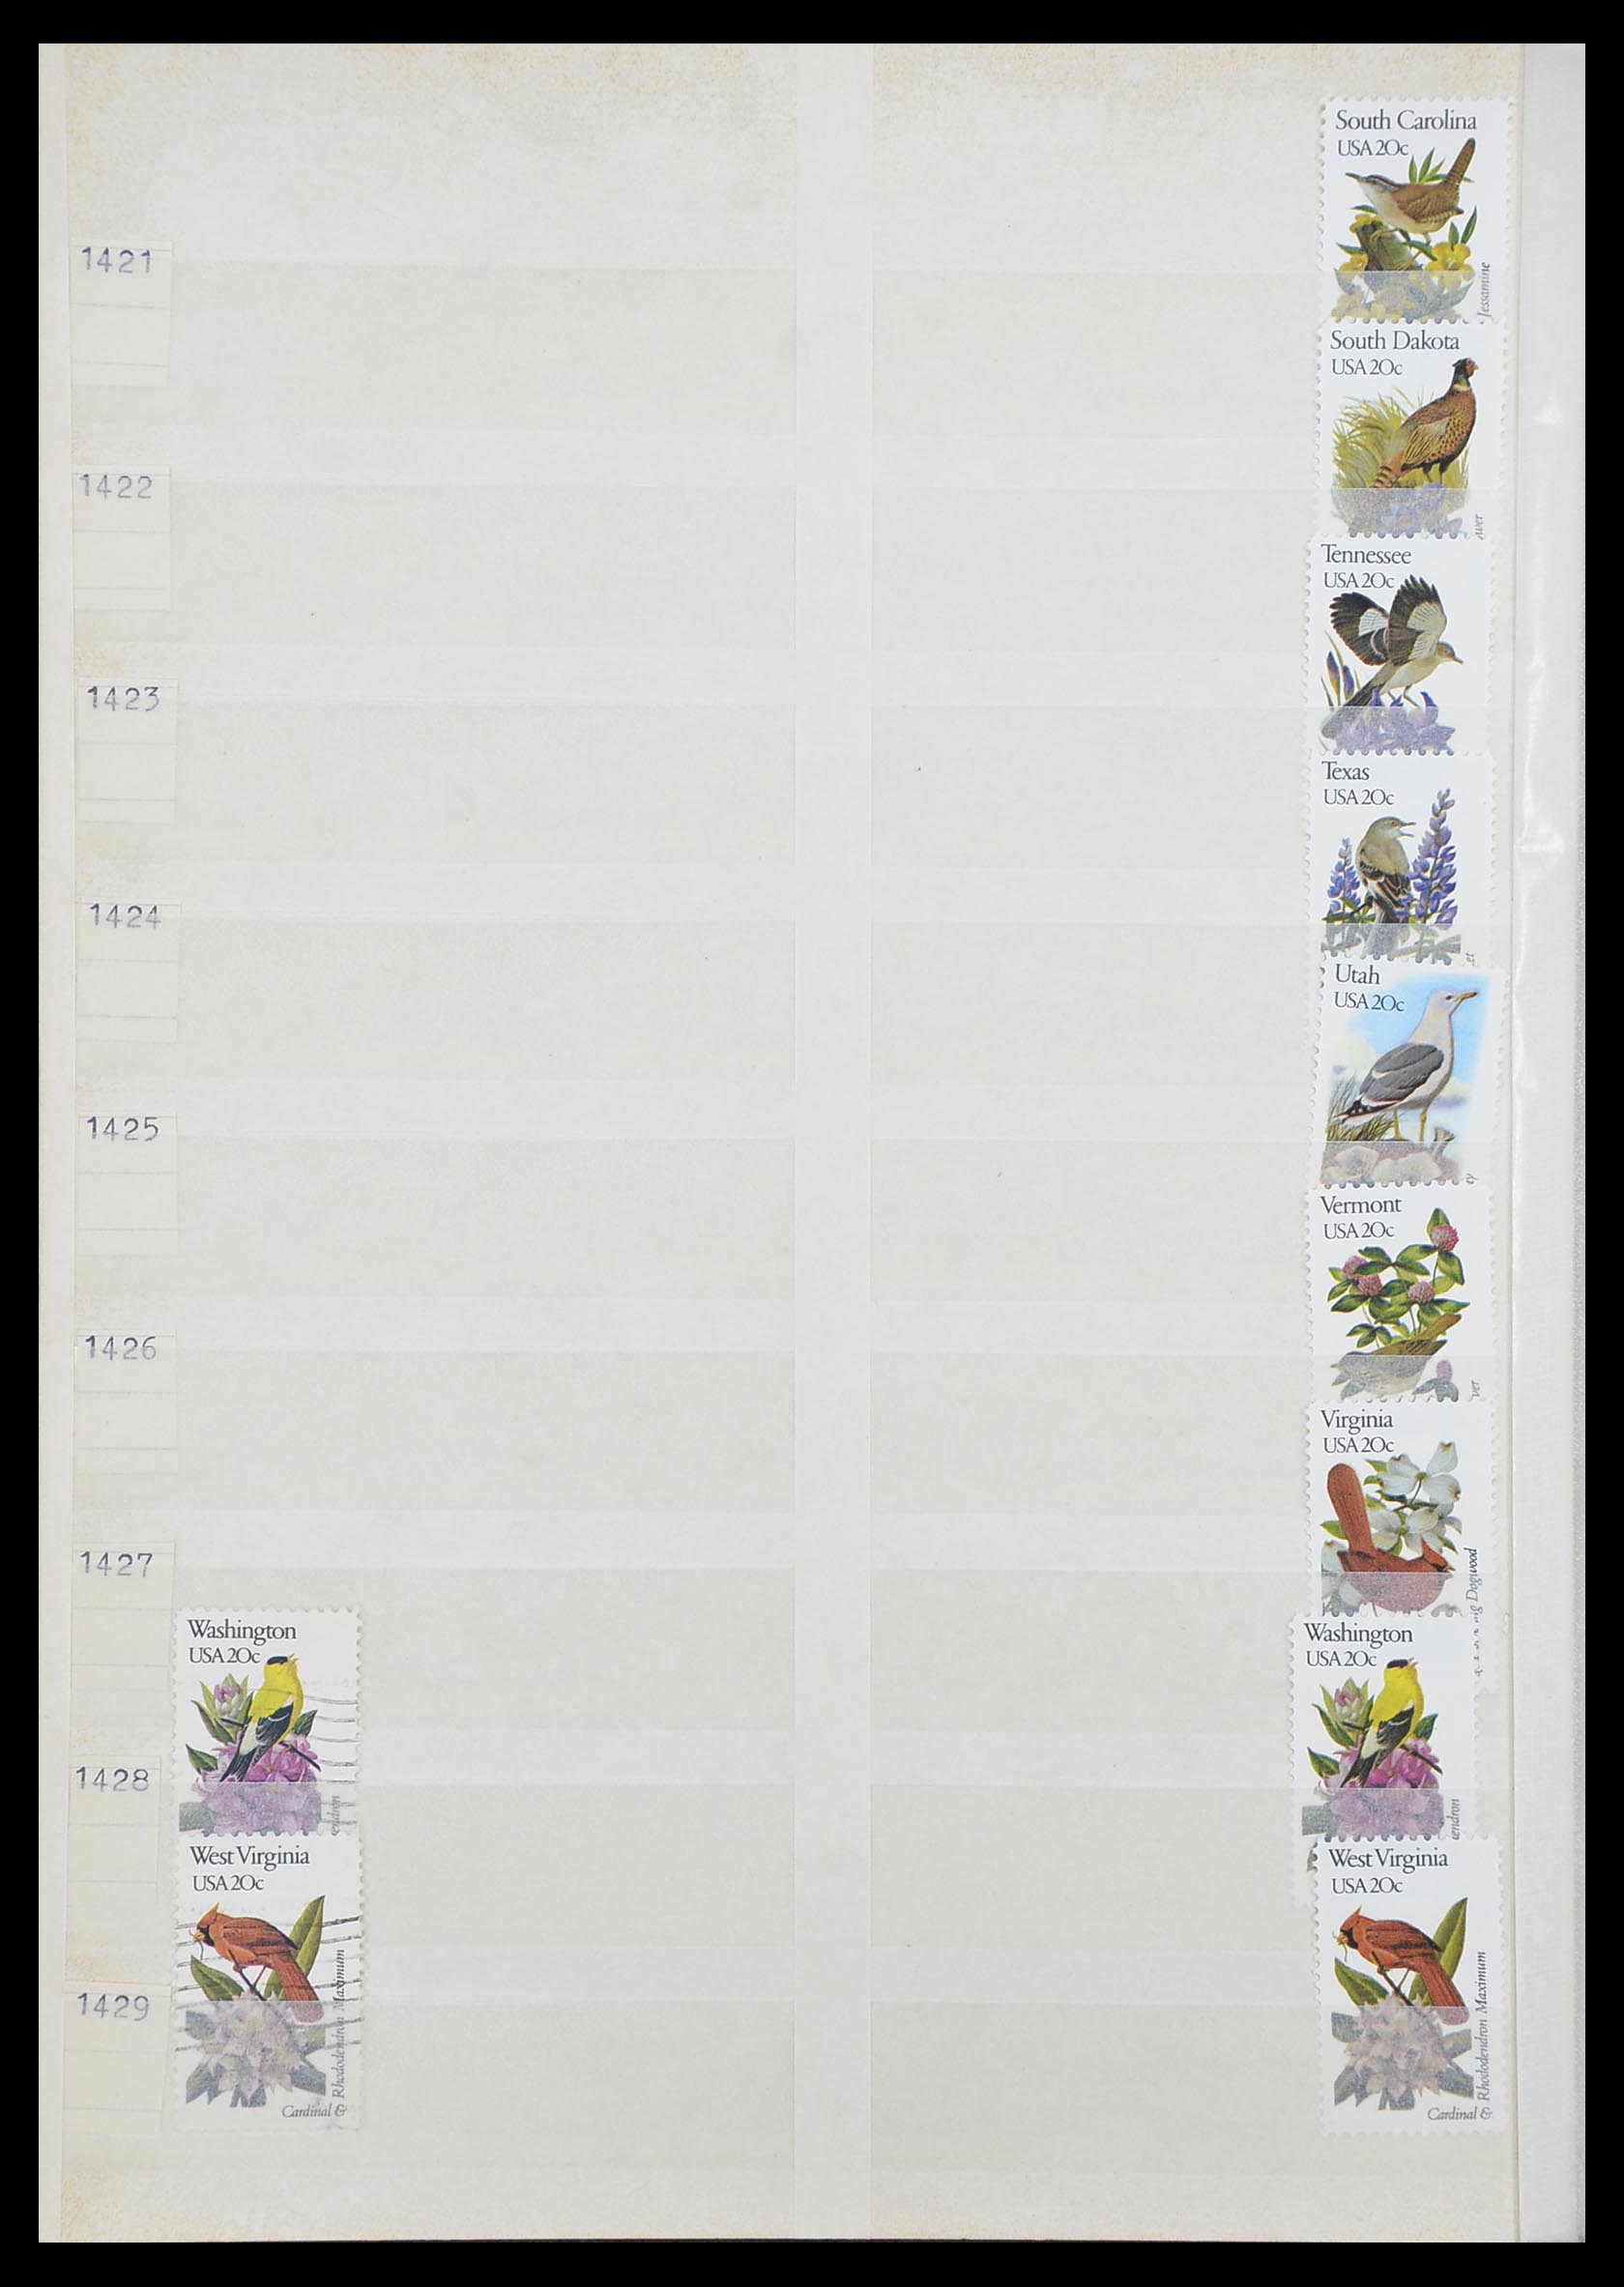 33857 088 - Stamp collection 33857 USA 1959-1988.